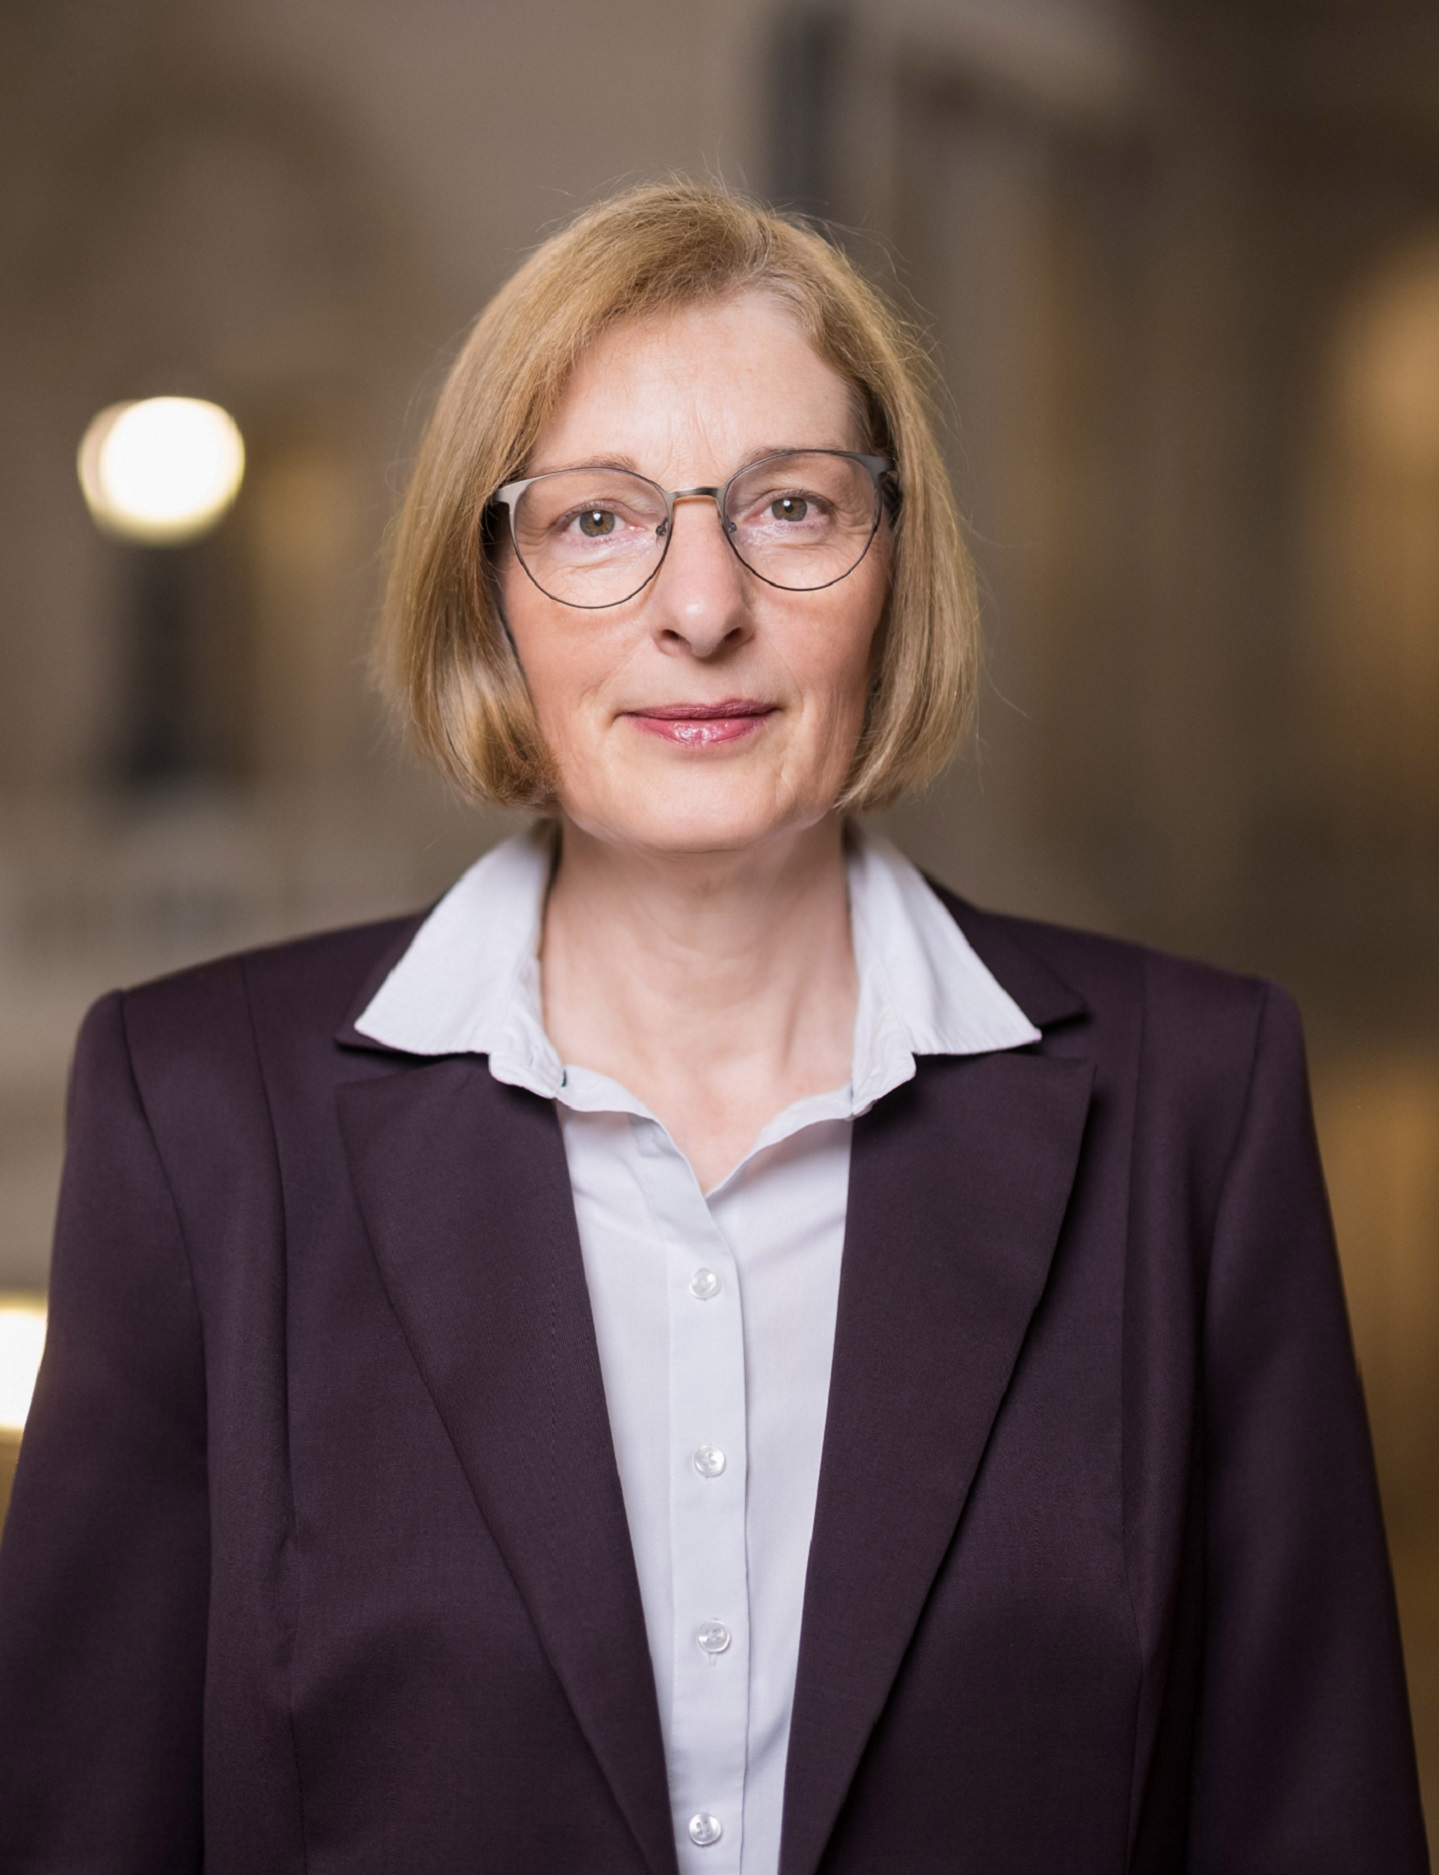 Vizepräsidentin des Bundesverwaltungsgerichts, Frau Dr. Susanne Rublack